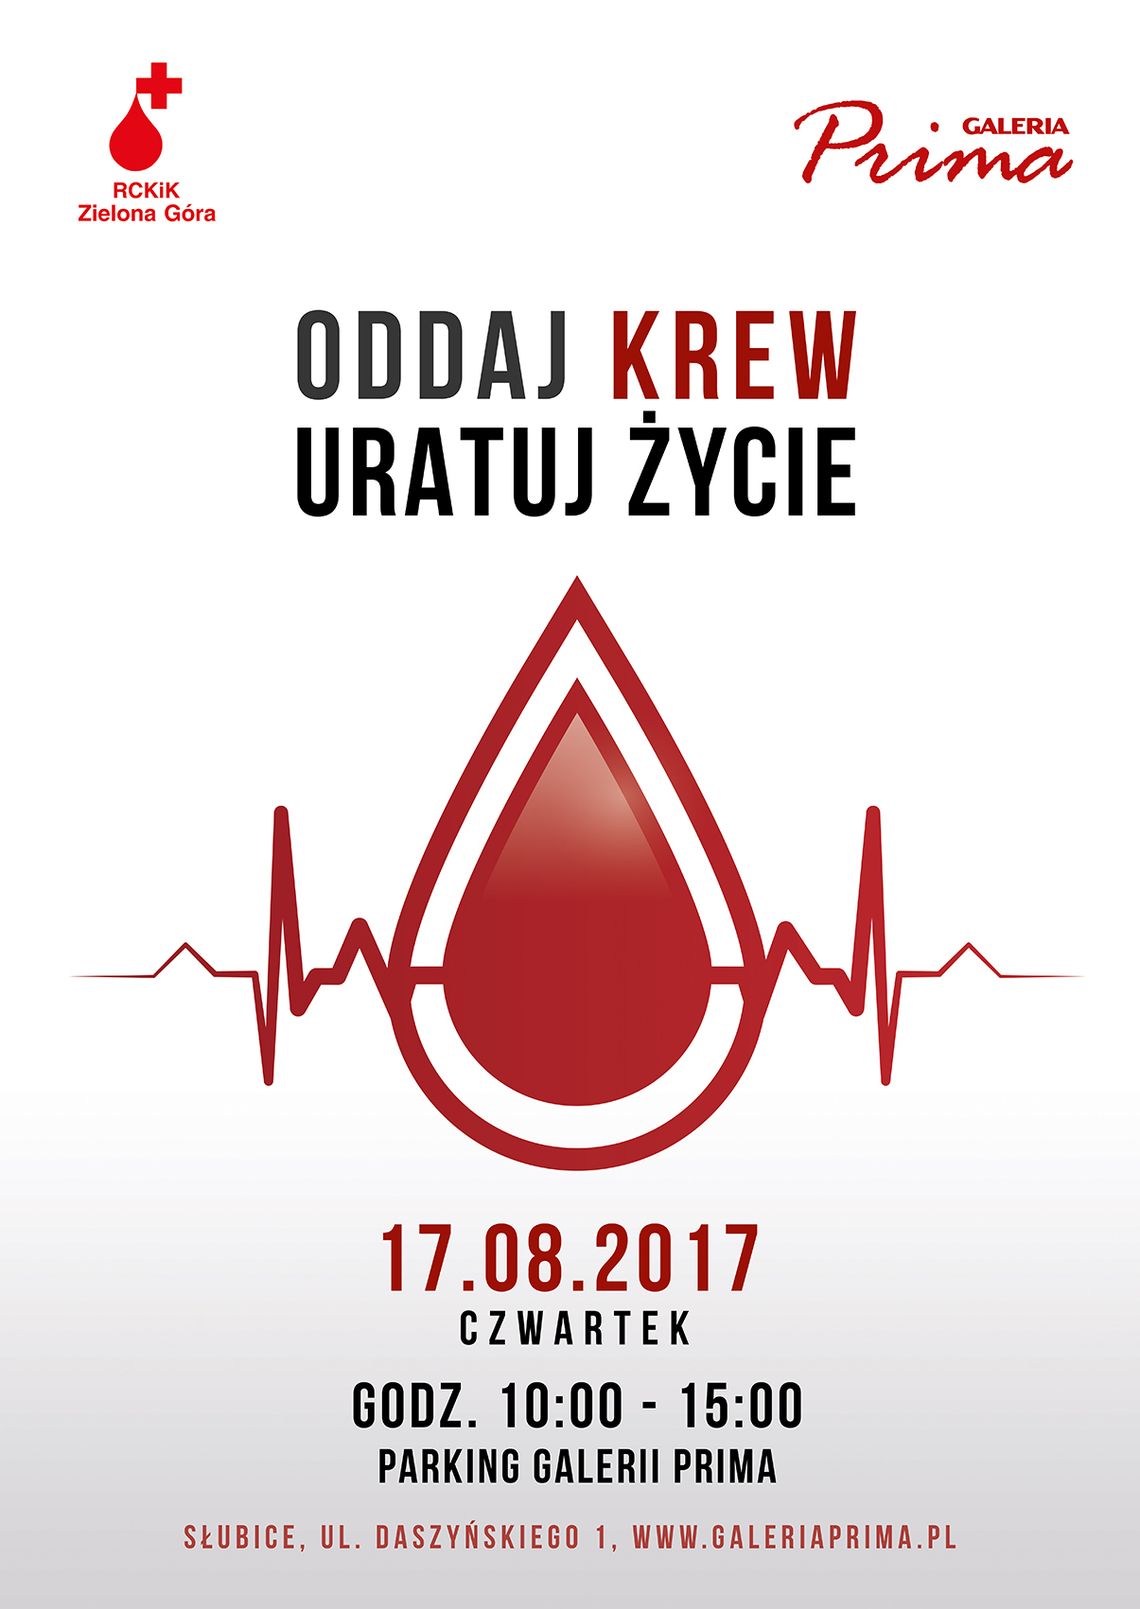 Zbiórka krwi w Galerii Prima – Oddaj krew uratuj życie